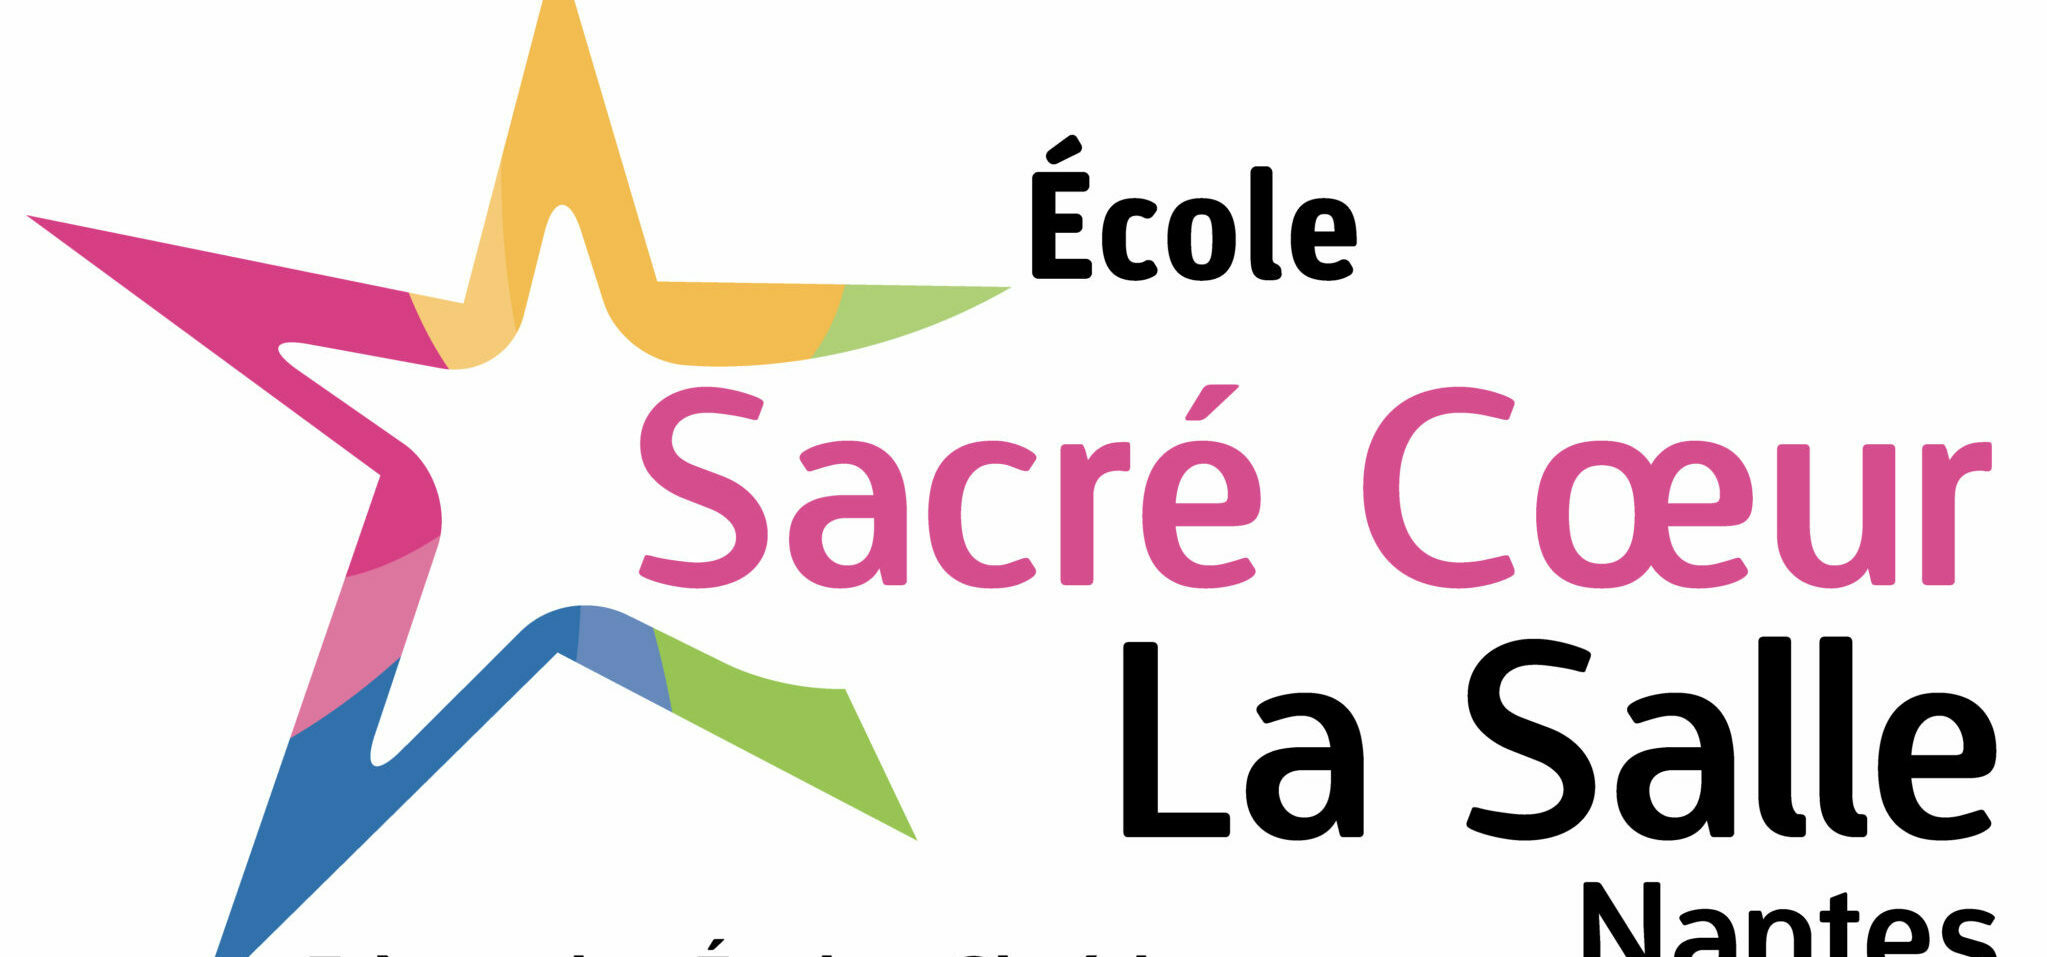 Ecole Sacré Coeur La Salle Nantes